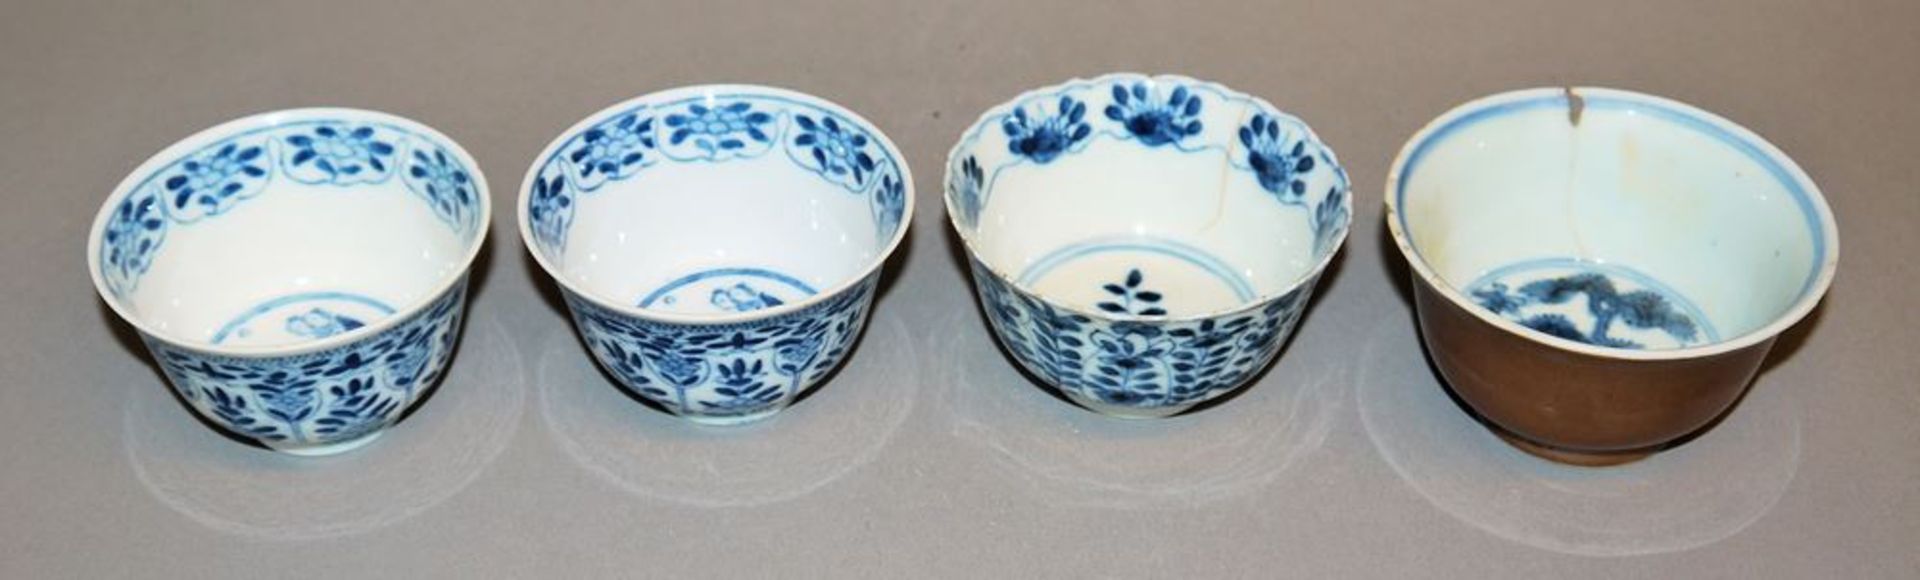 Teller und sieben chinesische Koppchen in Blauweiß-Porzellan,  Kangxi-Zeit bis Ende Qing - Bild 5 aus 6